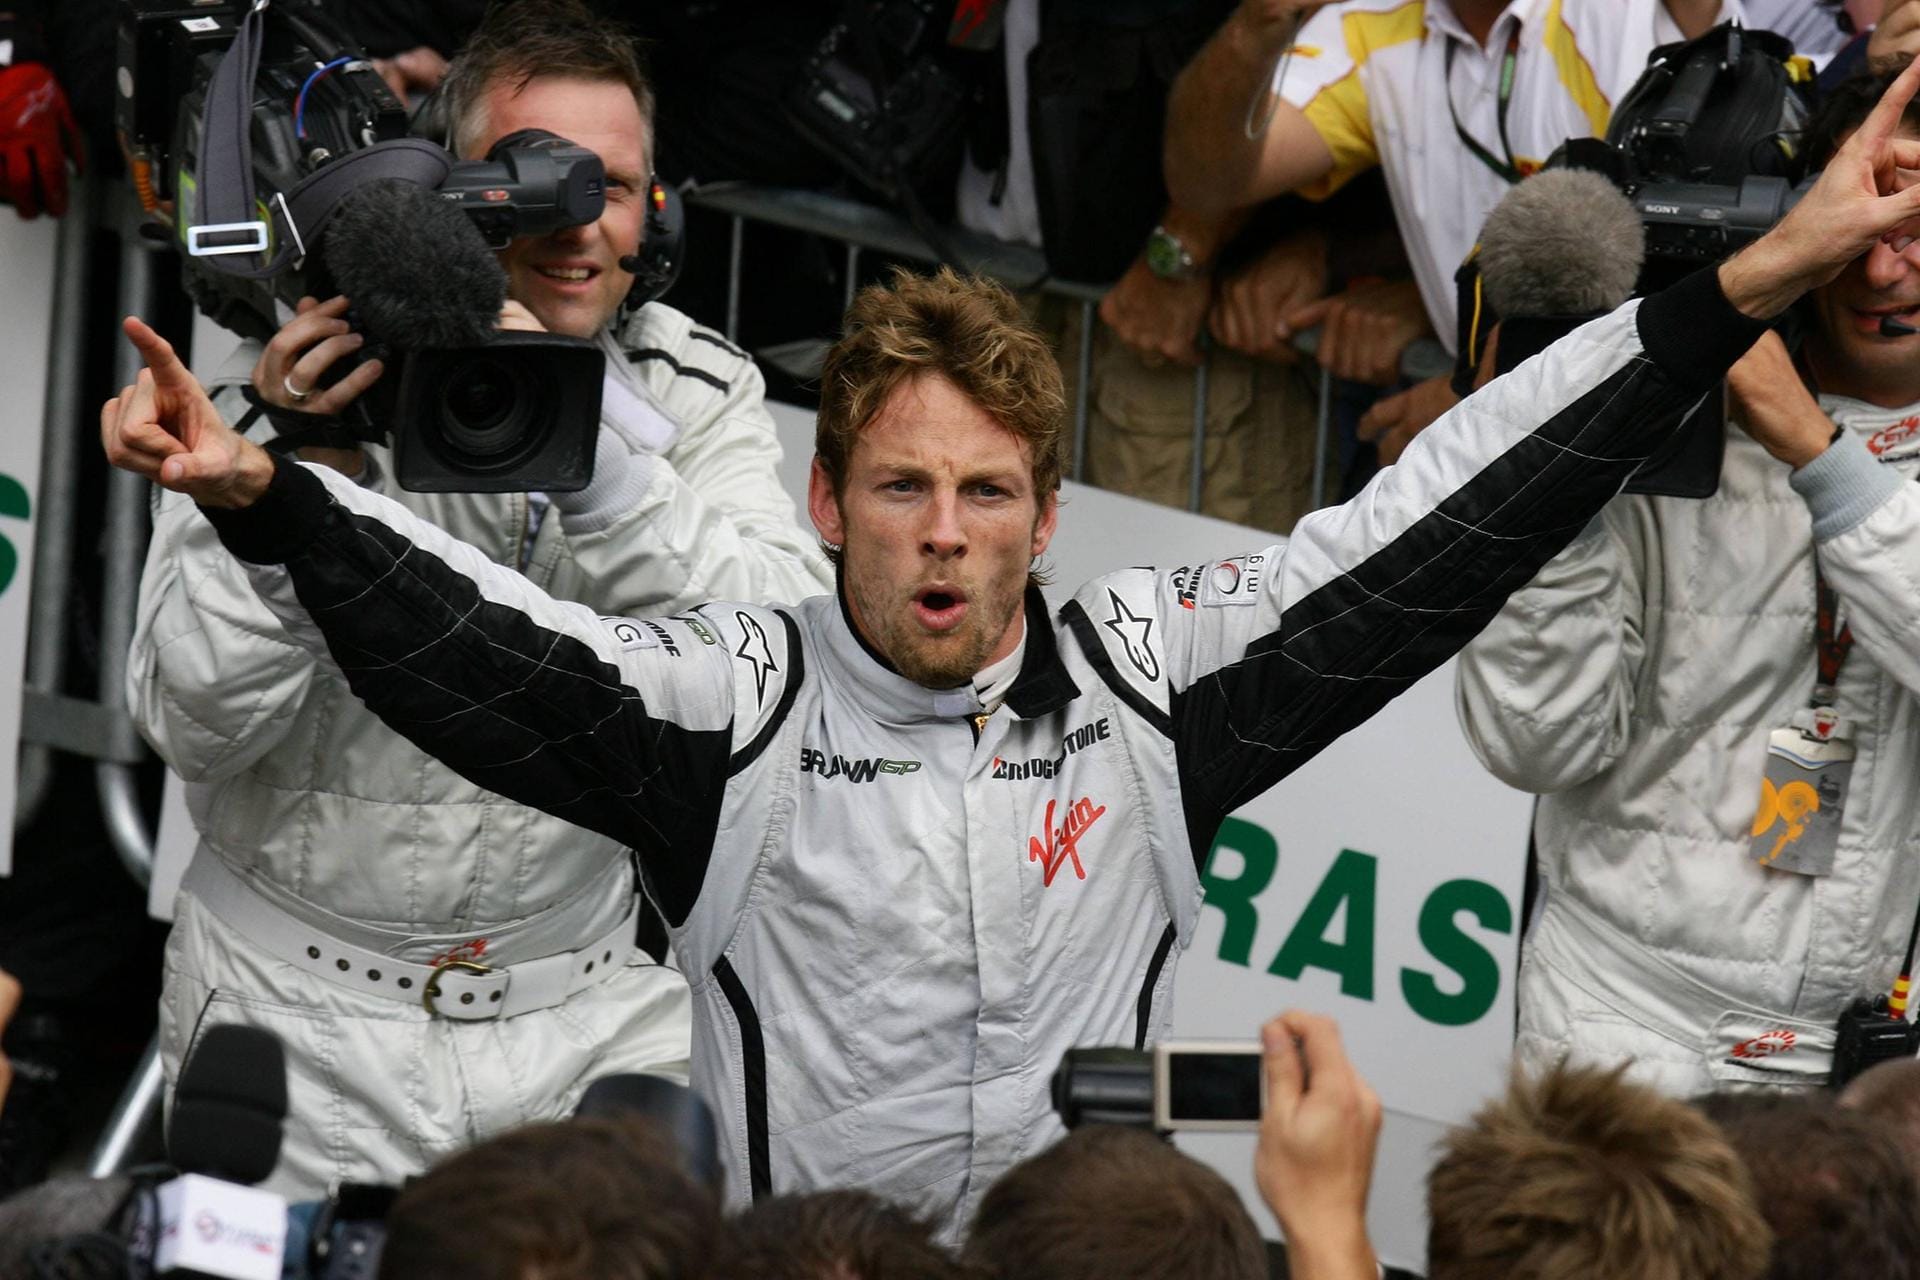 So jubelt ein Weltmeister: Jenson Button schaffte 2009 den Coup mit dem damals neuen Rennstall Brawn GP. Der Brite gewann sechs der ersten sieben Saisonrennen und führte das Gesamtklassement das ganze Jahr über an. Es war die einzige Saison von Button für den Rennstall – auch das Team ging 2010 in Mercedes auf. Insgesamt 17 Jahre fuhr Button in der Formel 1, seine letzte Station war auch seine längste: Sieben Jahre für McLaren (2010-2017).